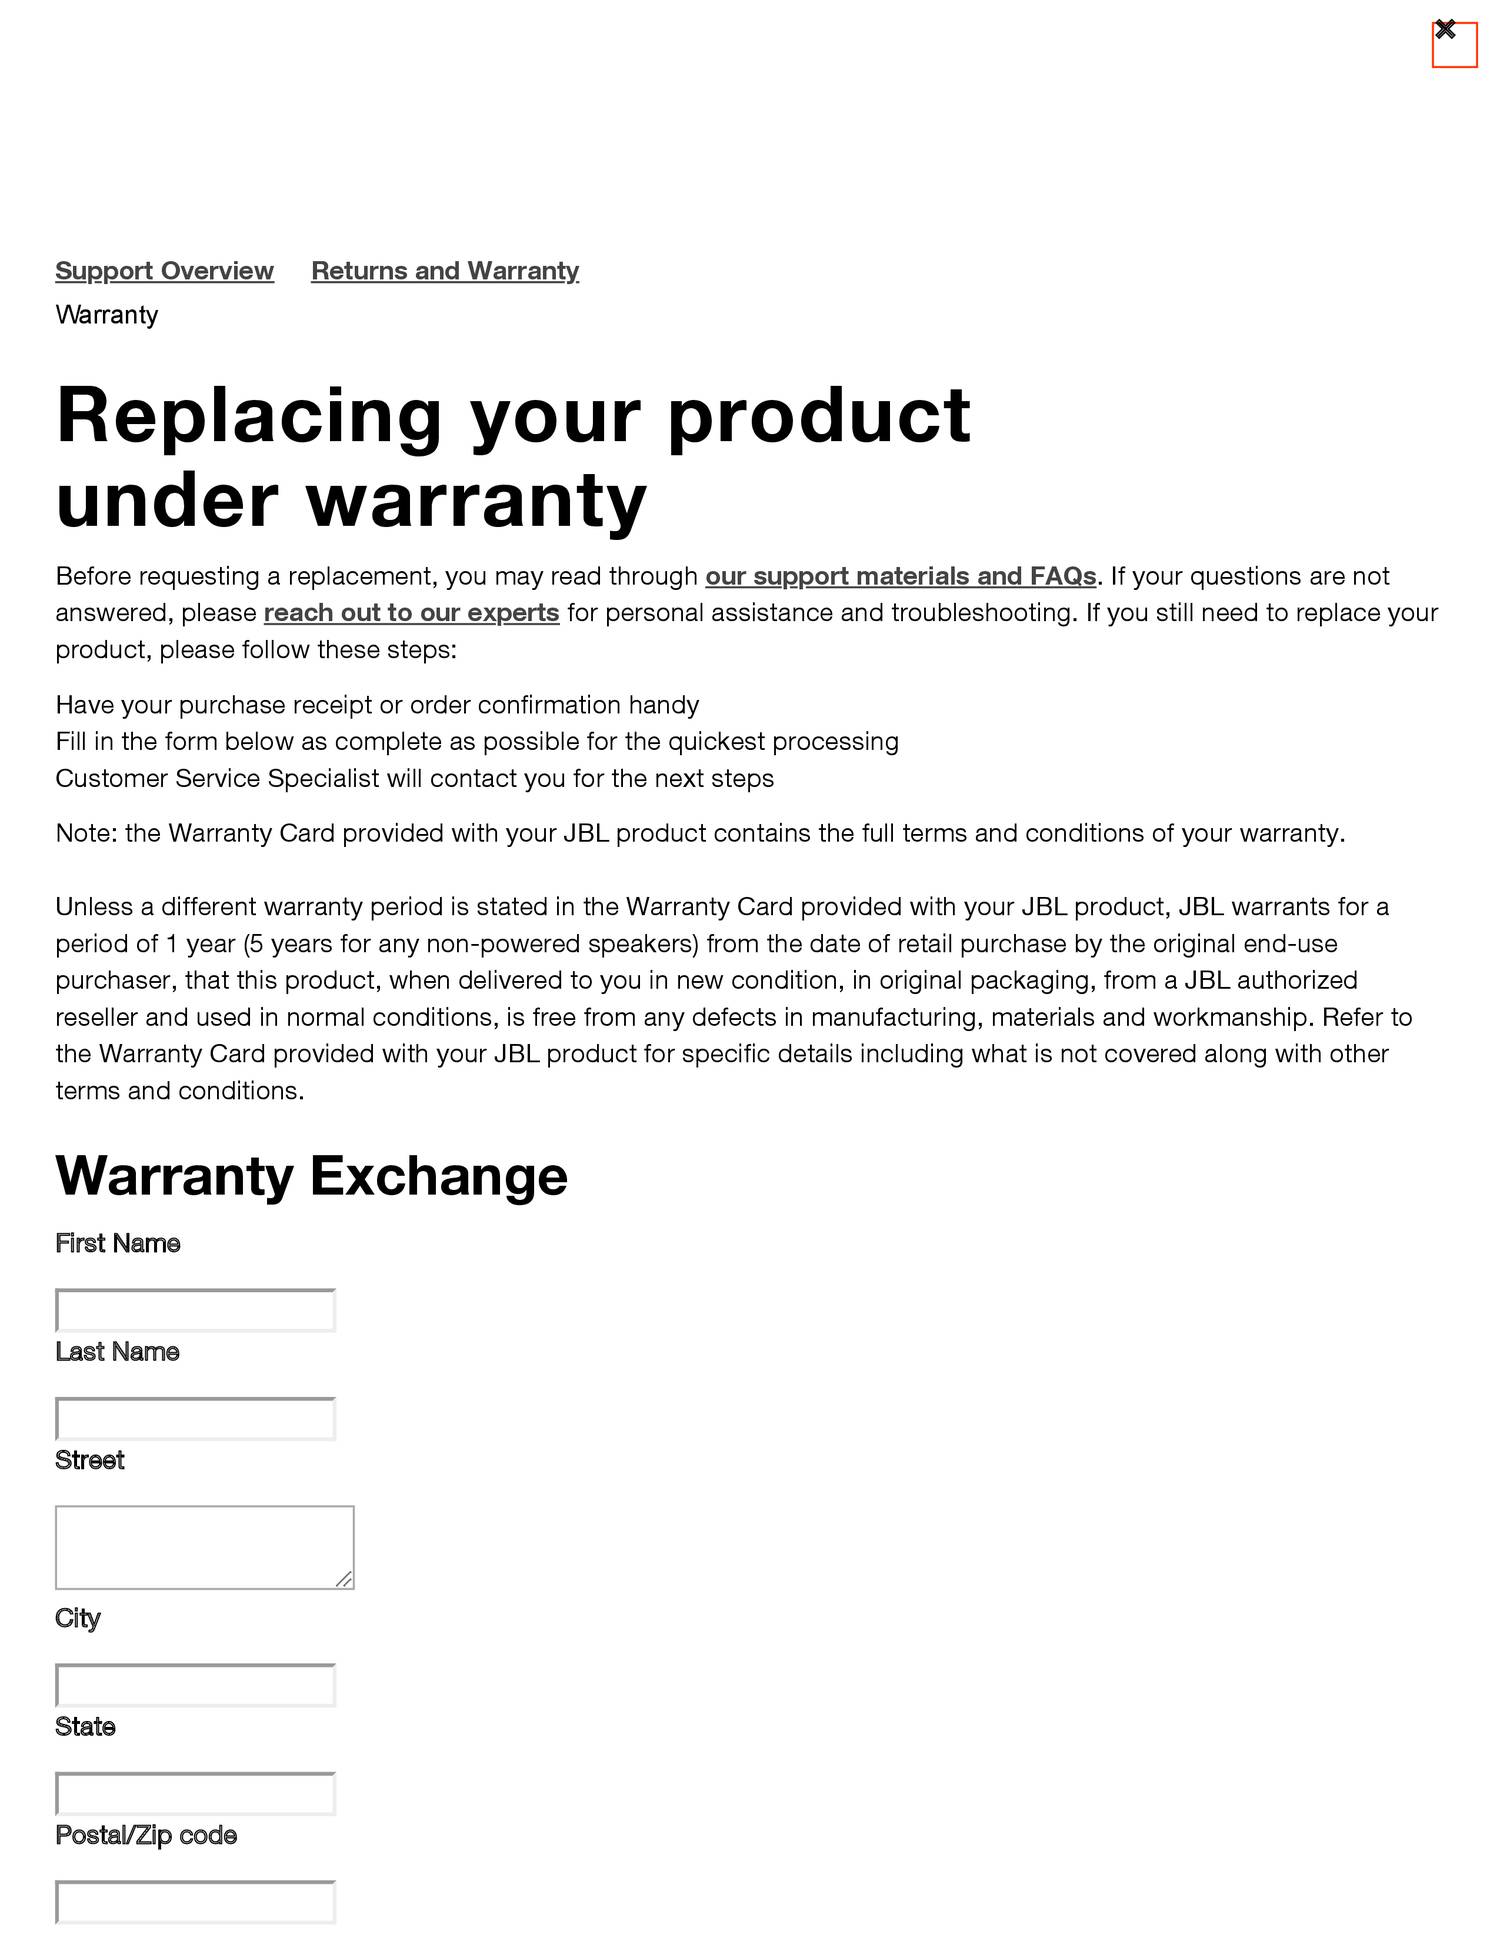 JBL Support - Warranty.pdf